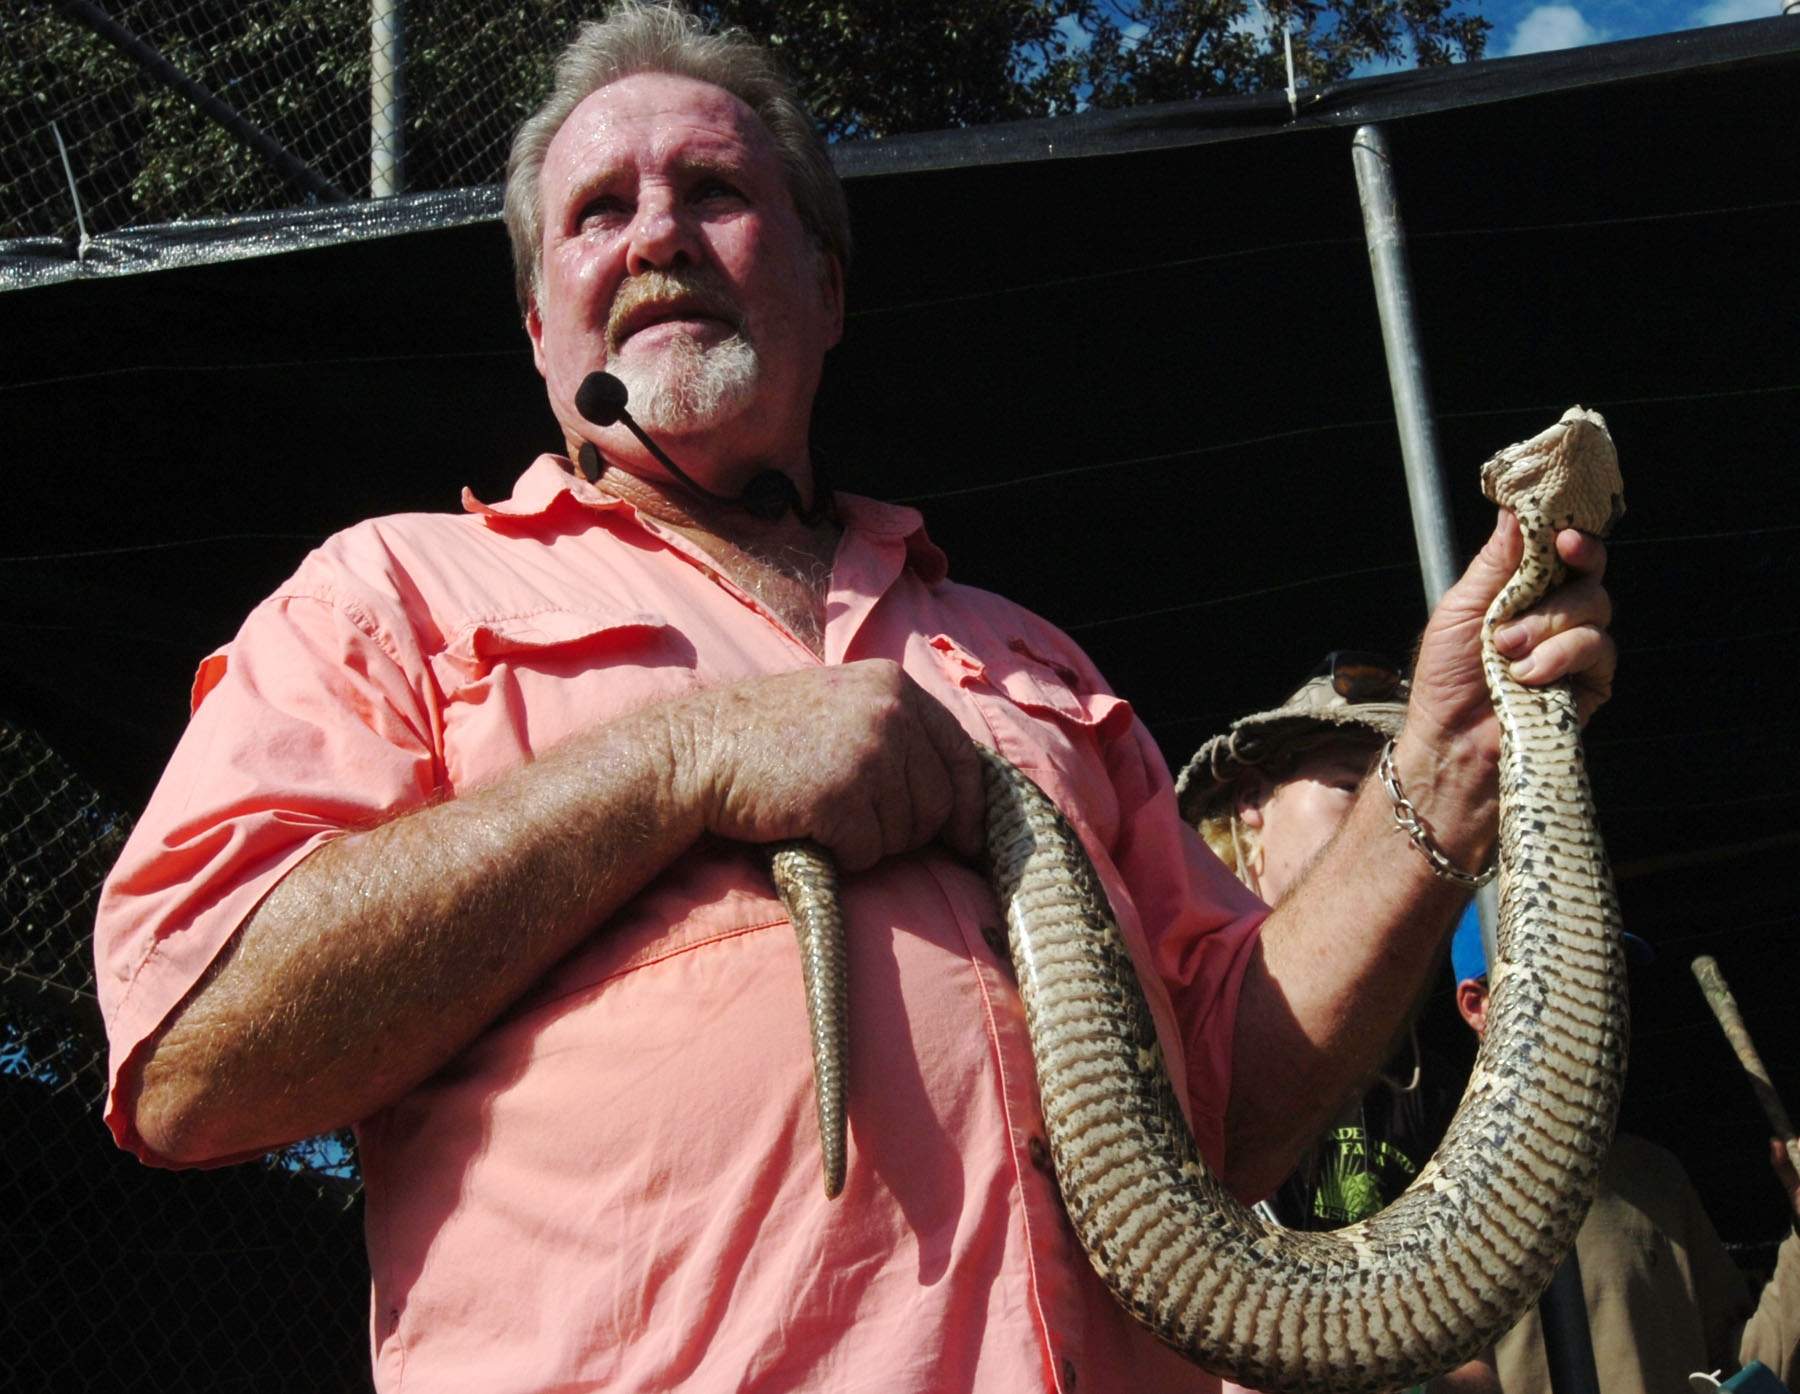 Snake handler making final appearance at Rattlesnake Festival | tbo.com